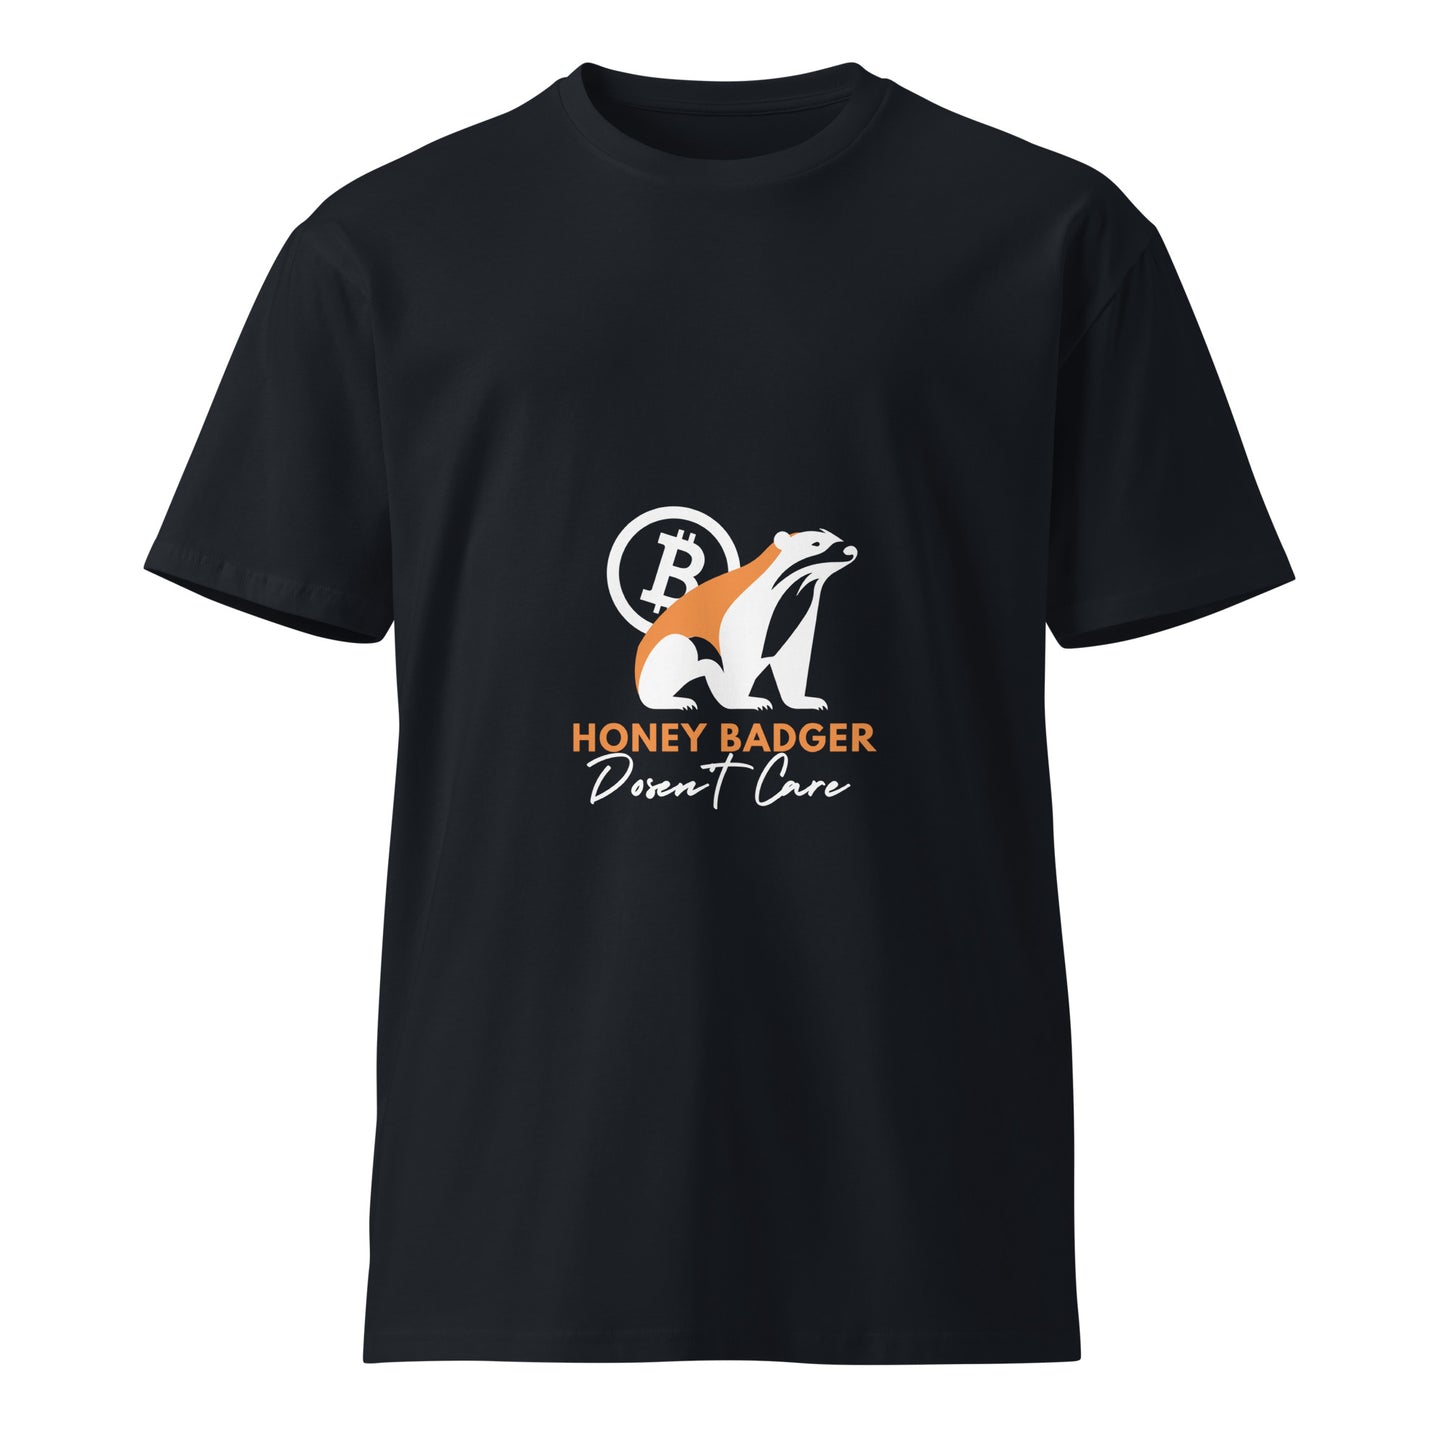 Honey Badger doesn't care Unisex premium t-shirt